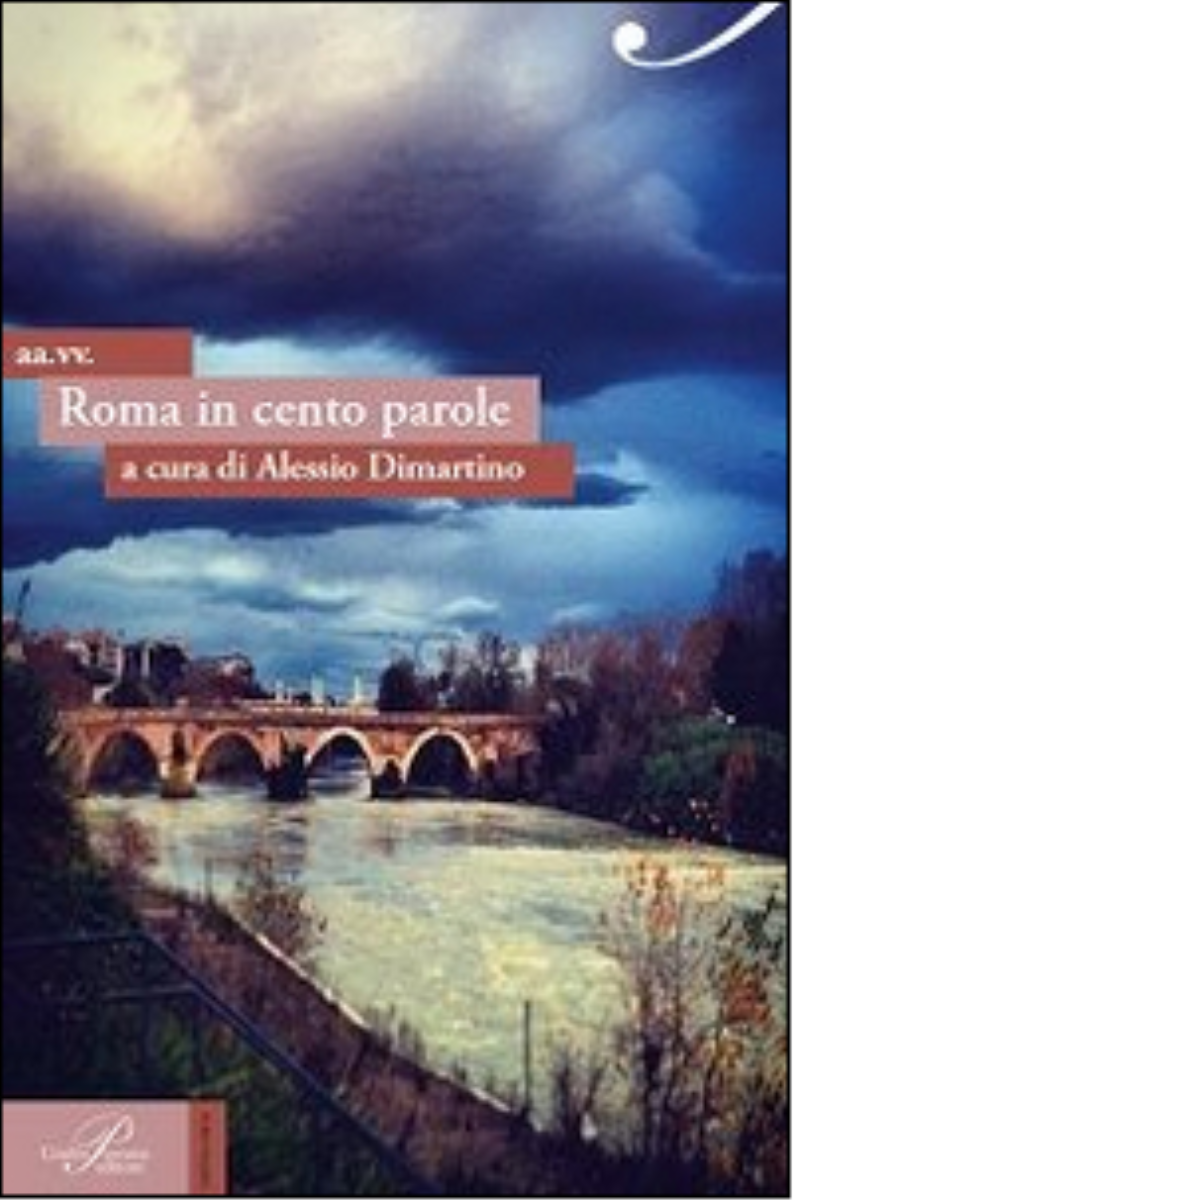 Roma in cento parole - A. Dimartino - Perrone editore, 2014